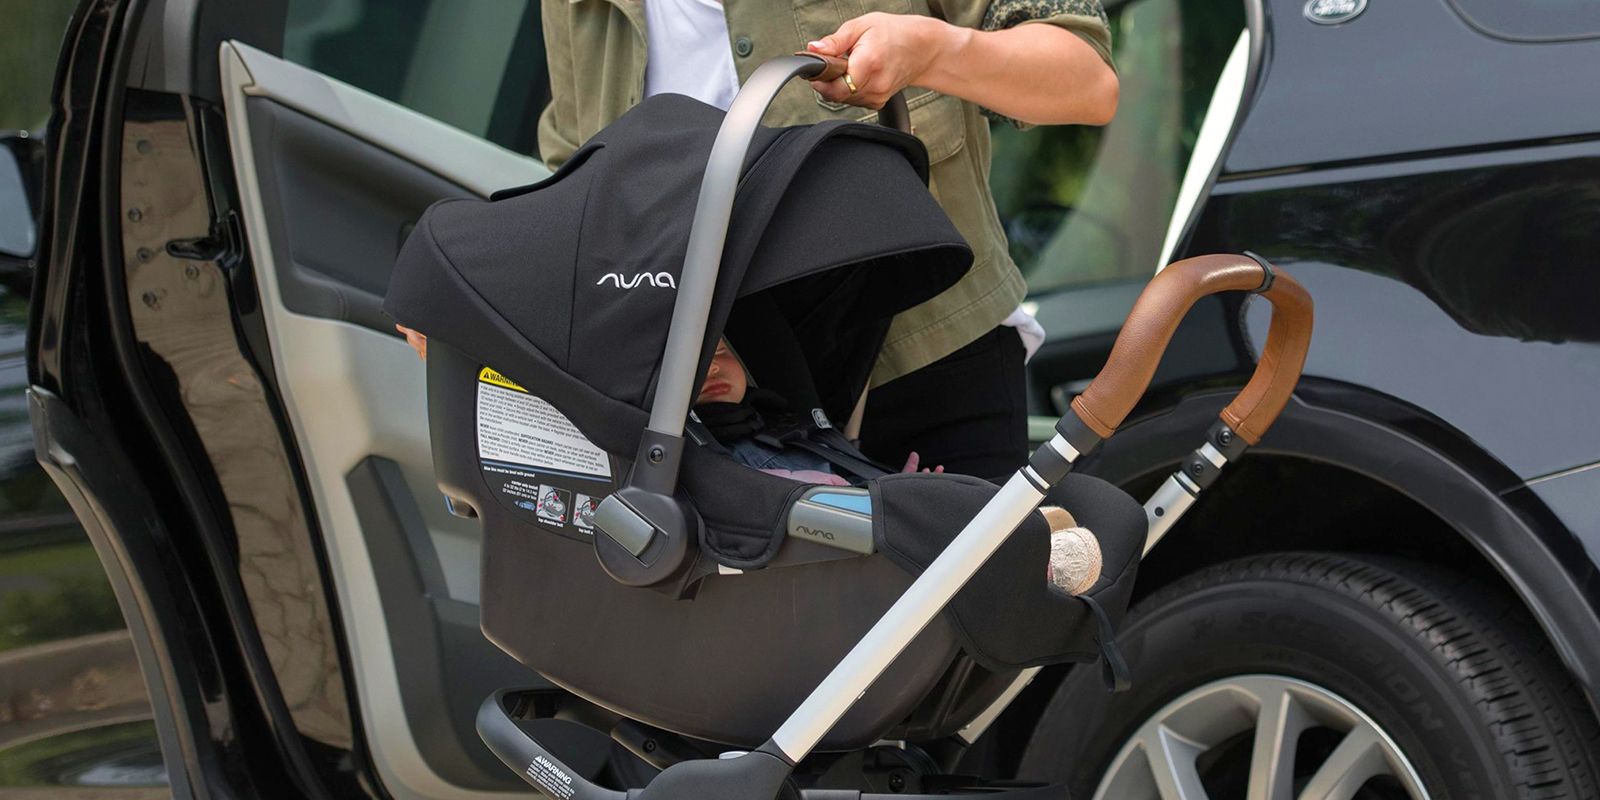 the safest infant car seat